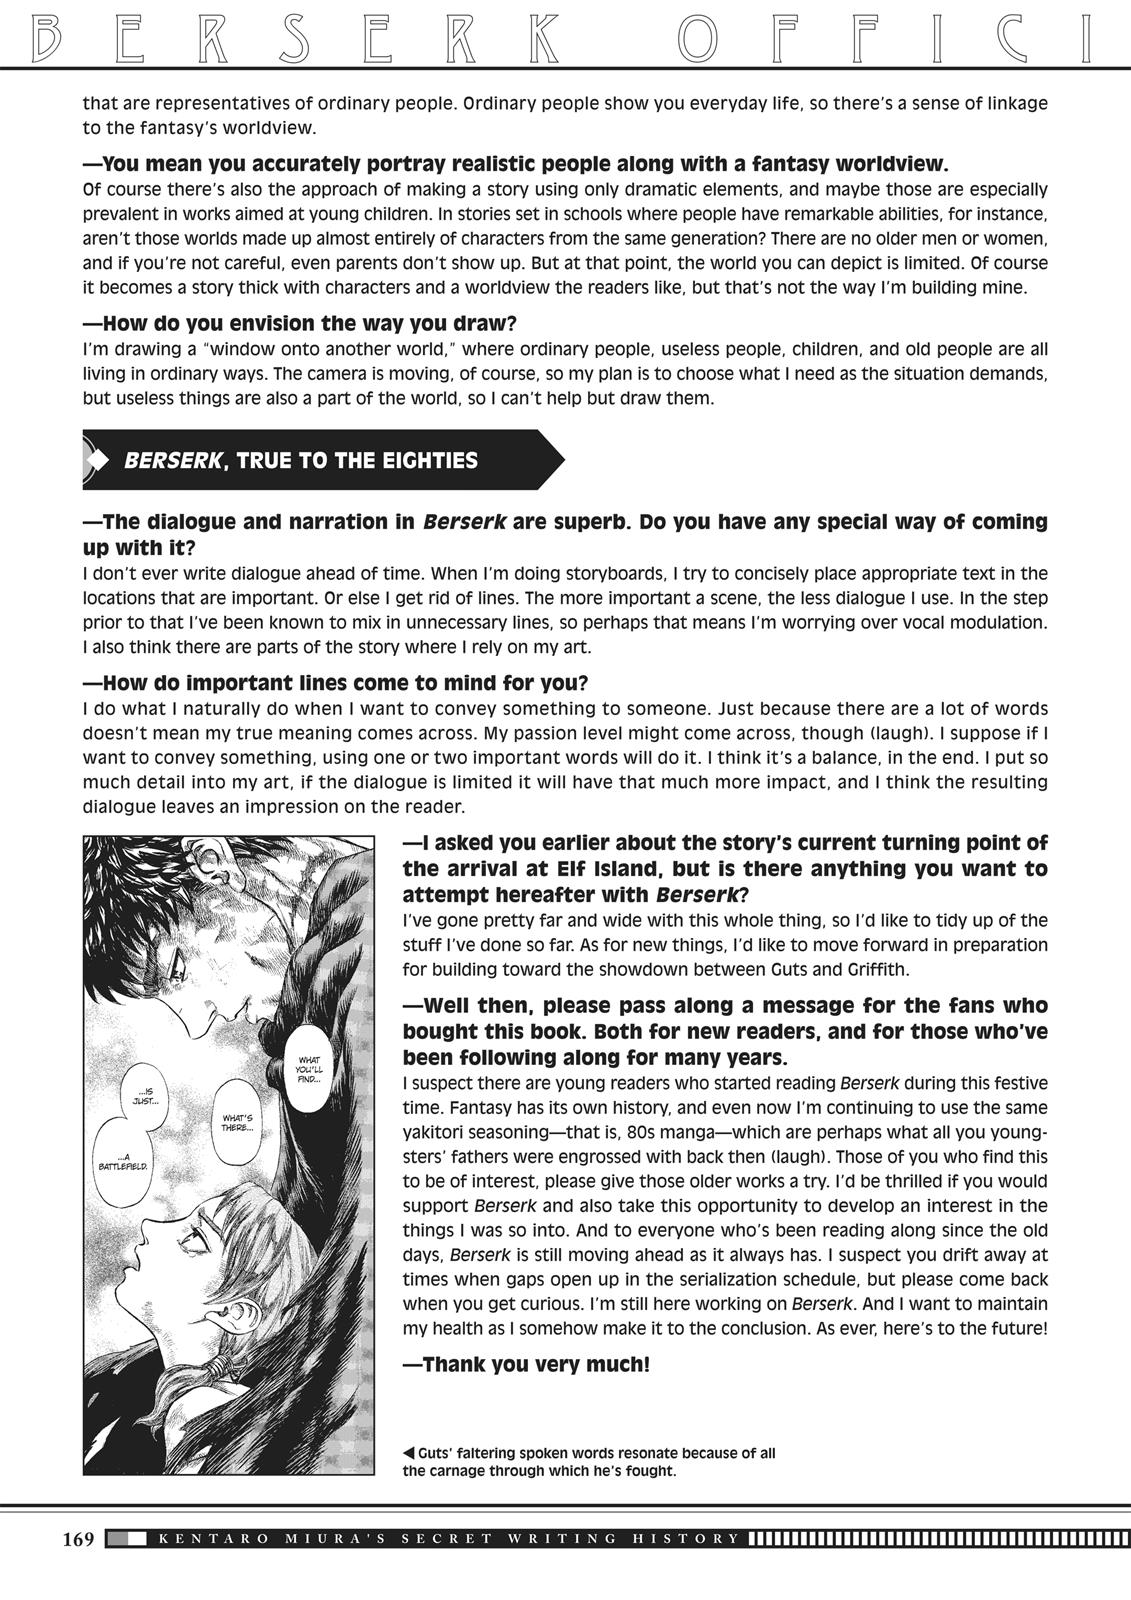 Berserk Manga Chapter 350.5 image 166